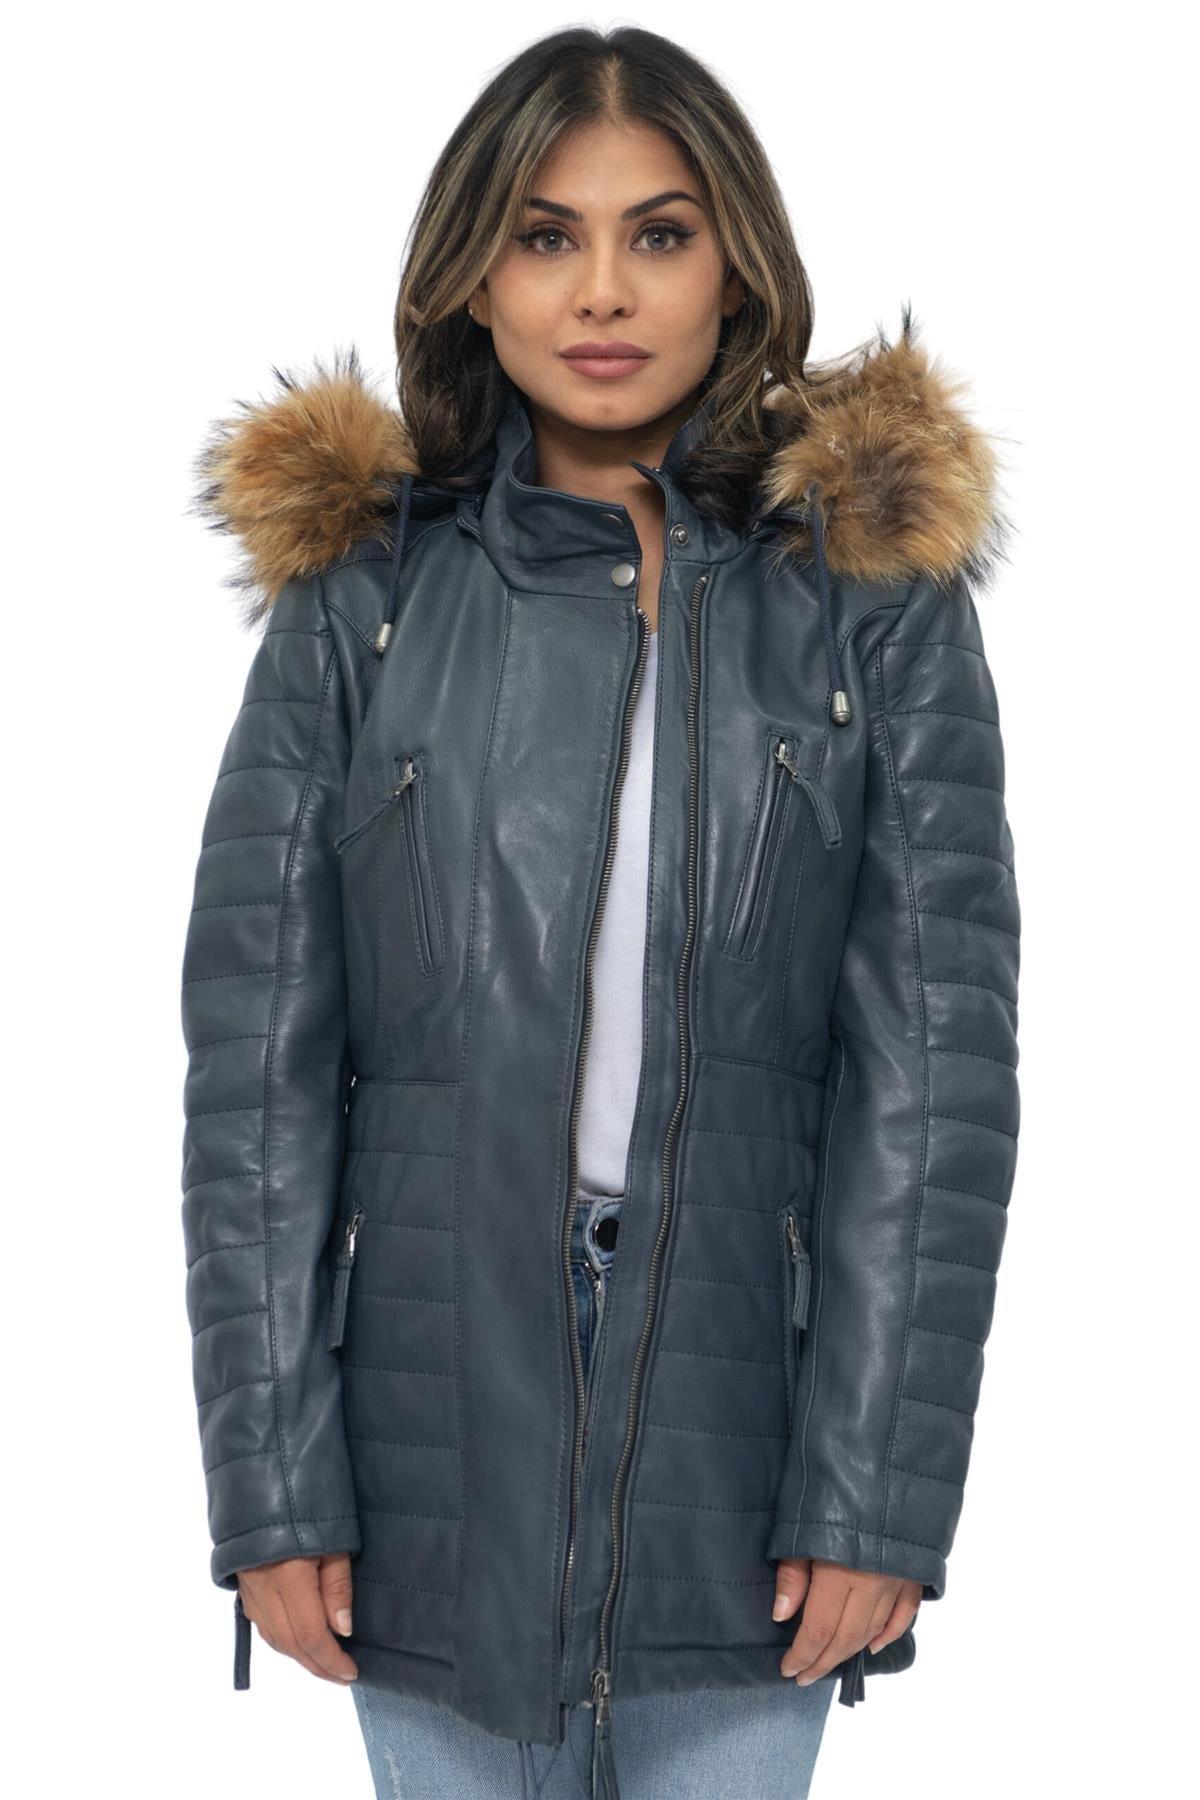 Стеганая кожаная куртка-парка-Куритиба Infinity Leather, темно-синий женская куртка на хлопковом наполнителе длинная облегающая парка с меховым воротником и капюшоном зима 2019